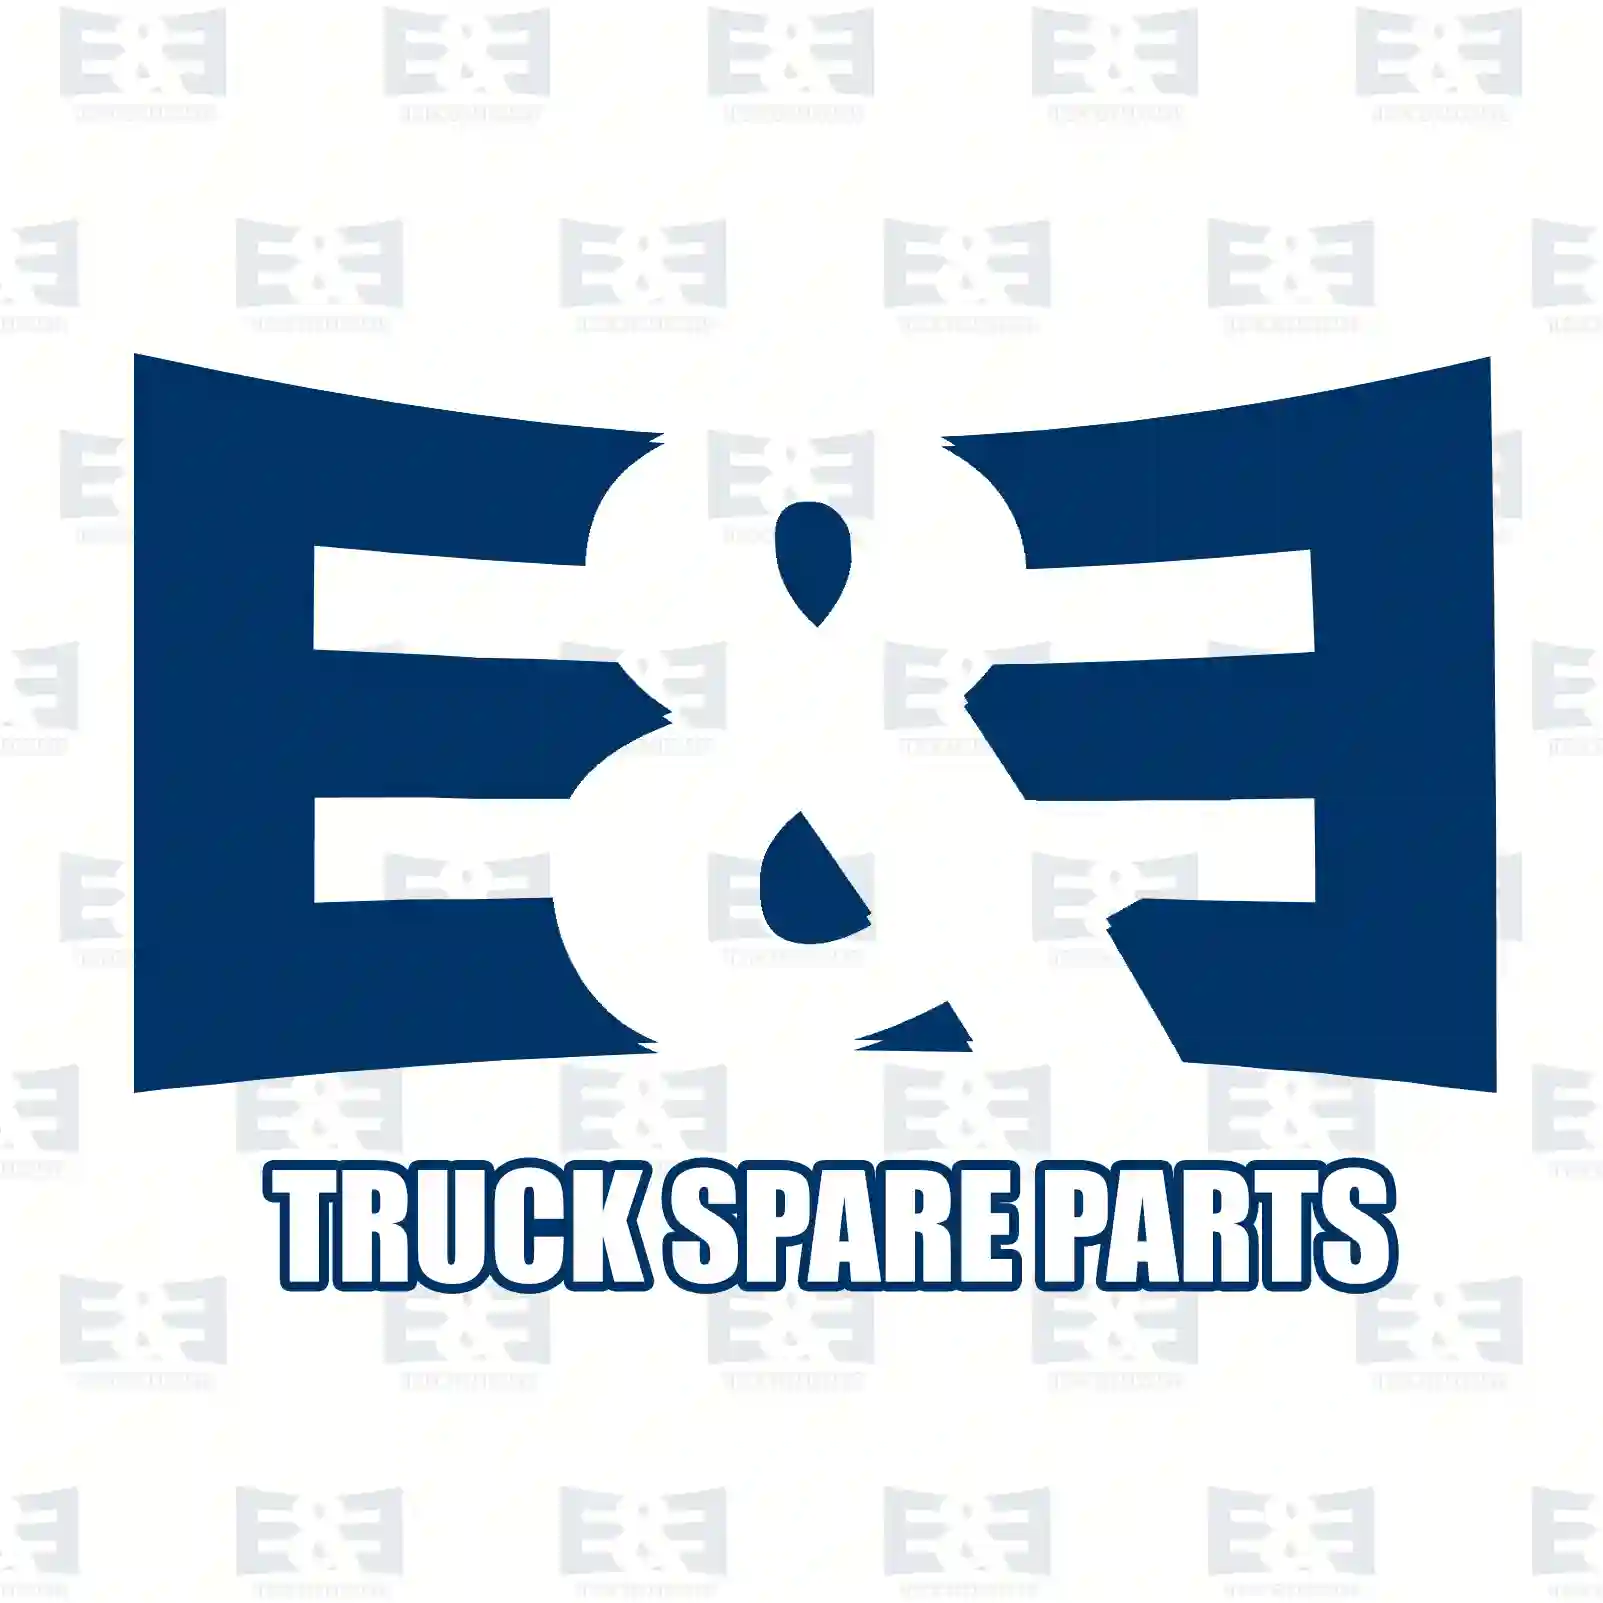 Exhaust brake, complete, 2E2208155, 1409485 ||  2E2208155 E&E Truck Spare Parts | Truck Spare Parts, Auotomotive Spare Parts Exhaust brake, complete, 2E2208155, 1409485 ||  2E2208155 E&E Truck Spare Parts | Truck Spare Parts, Auotomotive Spare Parts